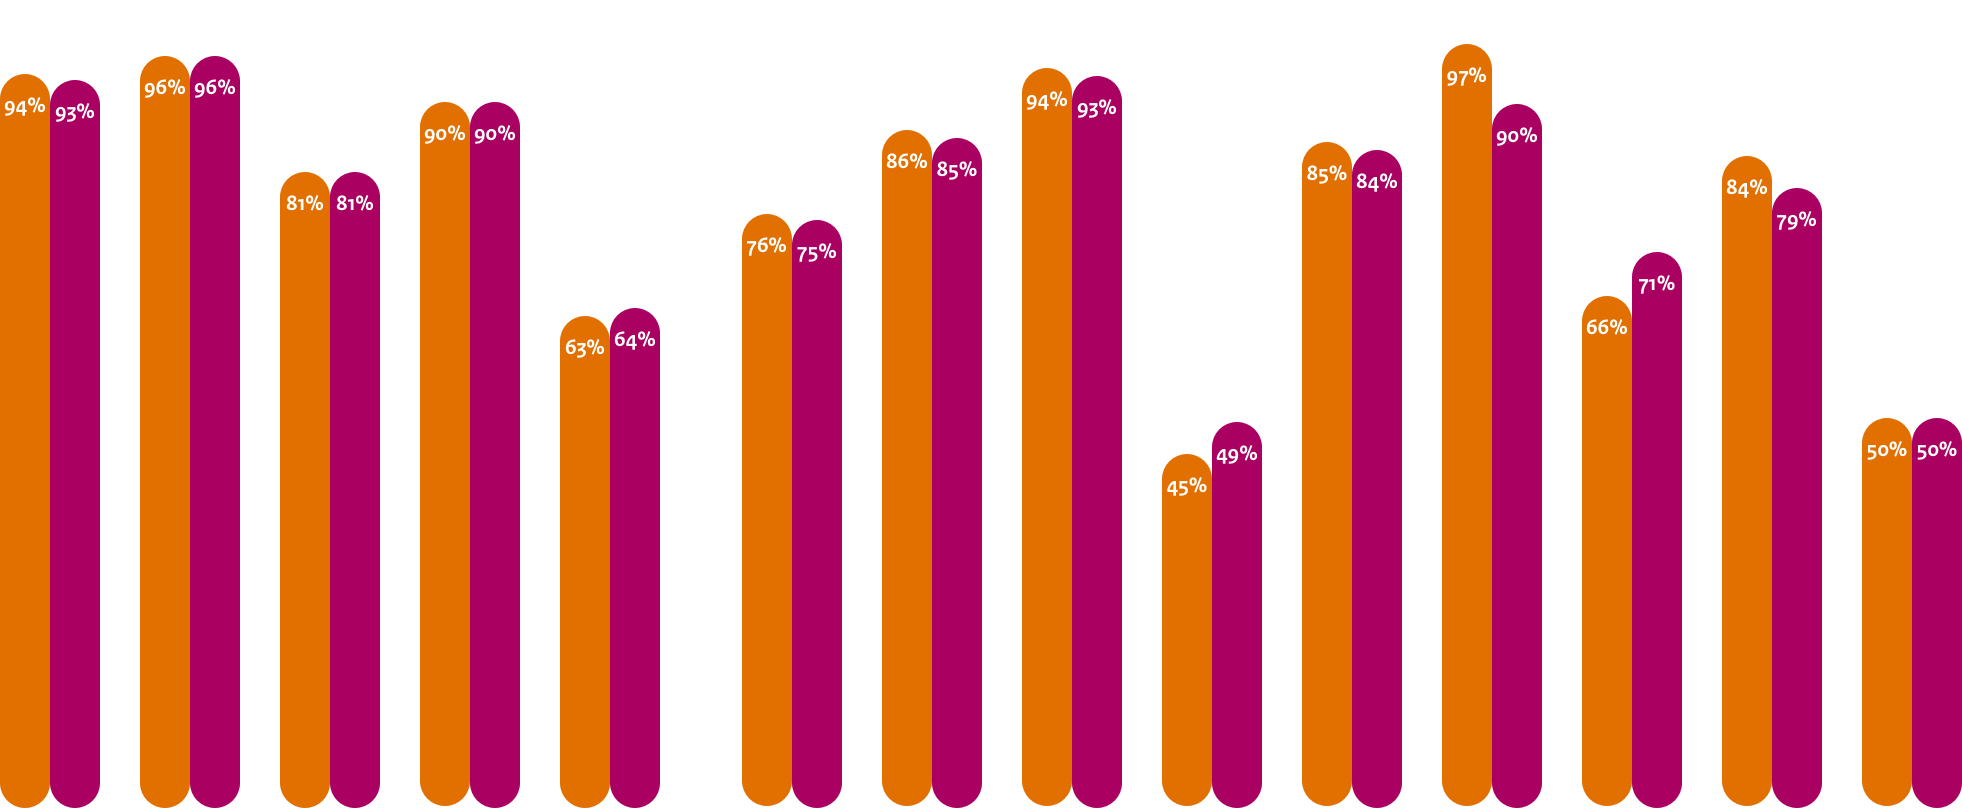 Gemiddelde adoptie webstandaarden Uitvoerders
DNSSEC: 94%, 93%
TLS: 96%, 96%
TLS NCSC: 81%, 81%
HTTPS: 90%, 90%
HSTS: 63%, 64%

Gemiddelde adoptie mailstandaarden Anti-phishing Uitvoerders
DMARC: 76%, 75%
DKIM: 86%, 85%
SPF: 94%, 93%
DMARC Policy: 45%, 49%
SPF Policy: 85%, 84%
START TLS: 97%, 90%
START TLS NCSC: 66%, 71%
DNSSEC MX: 84%, 79%
DANE: 50%, 50%